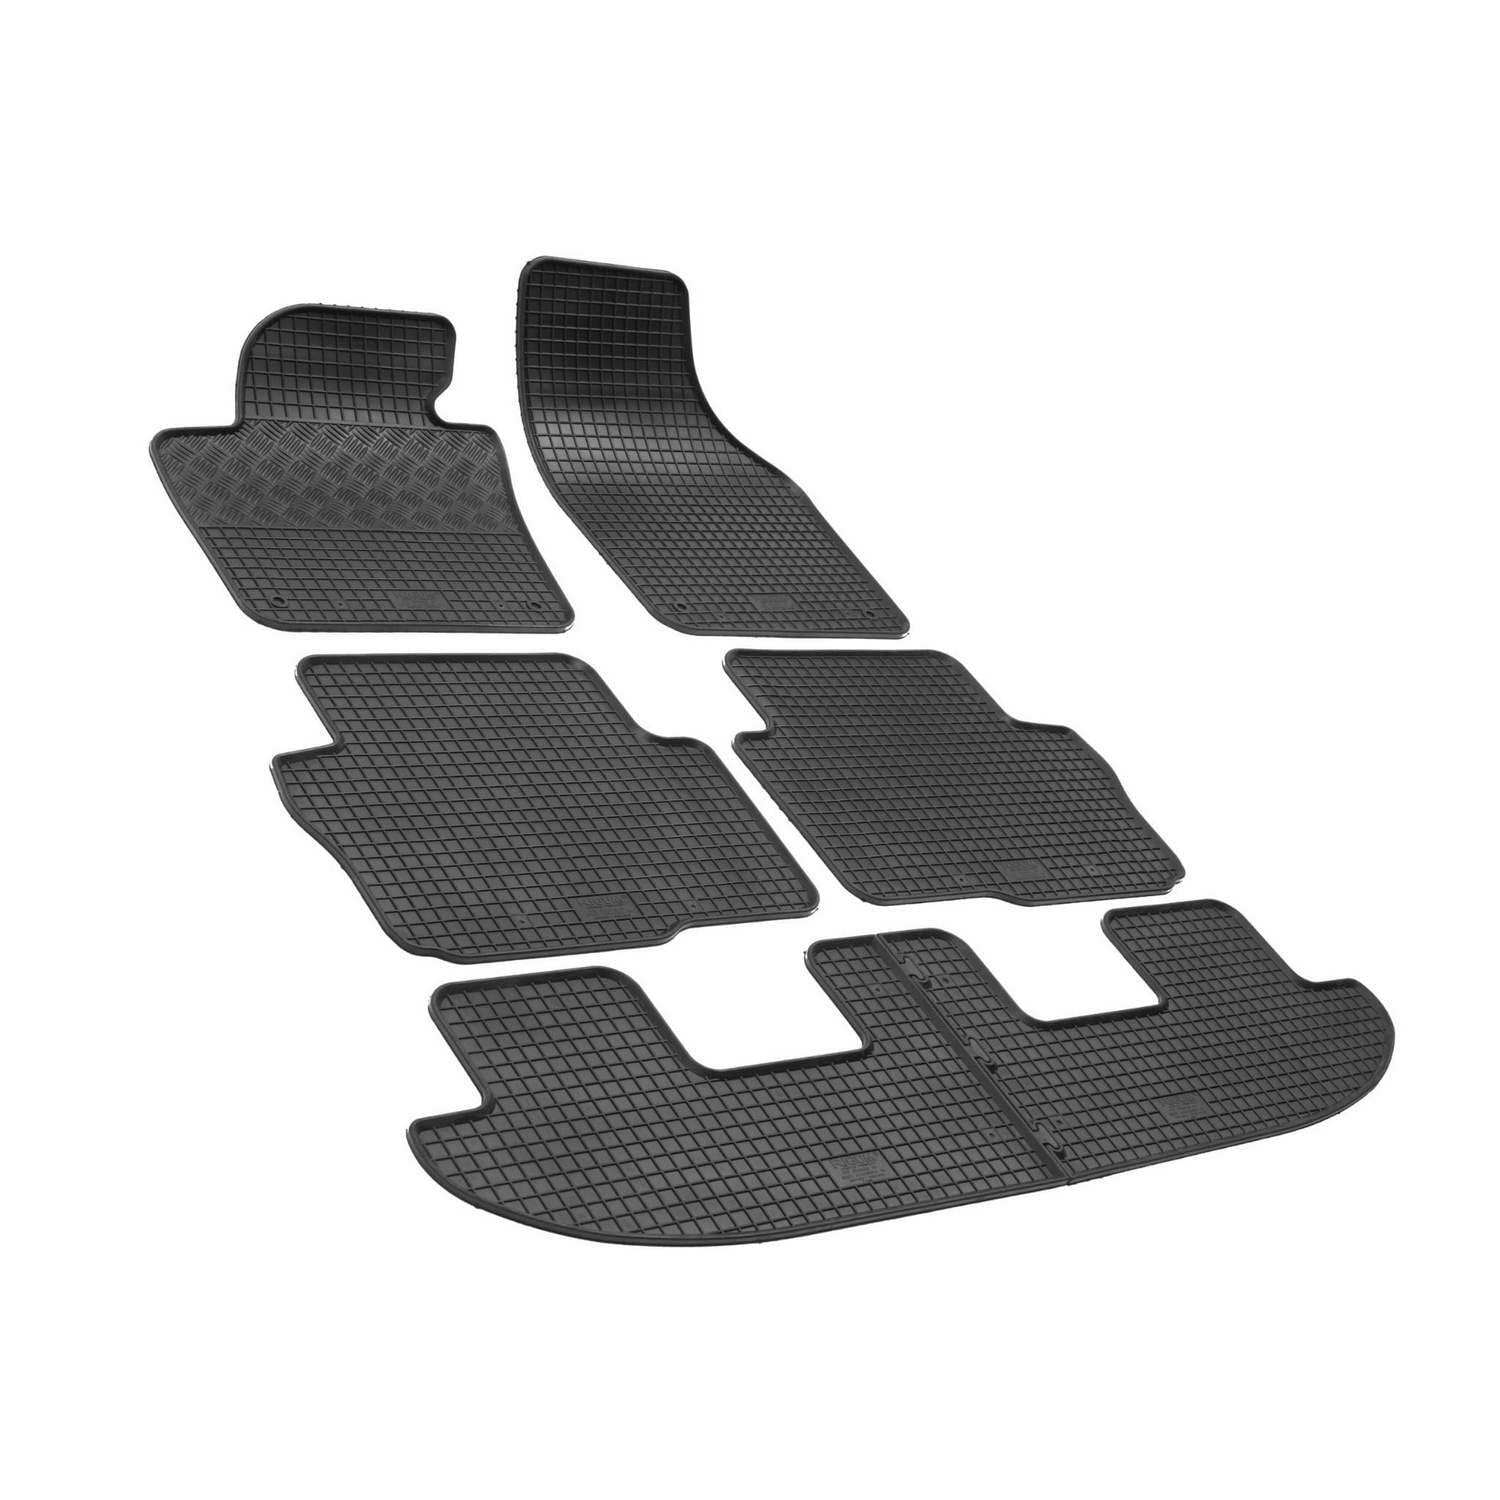 Fußmatten kompatibel mit Seat Alhambra 7 Sitze 2010- Gummi Auto 100% passgenaue Gummimatten Automatten Antirutsch Schwarz von Saferide